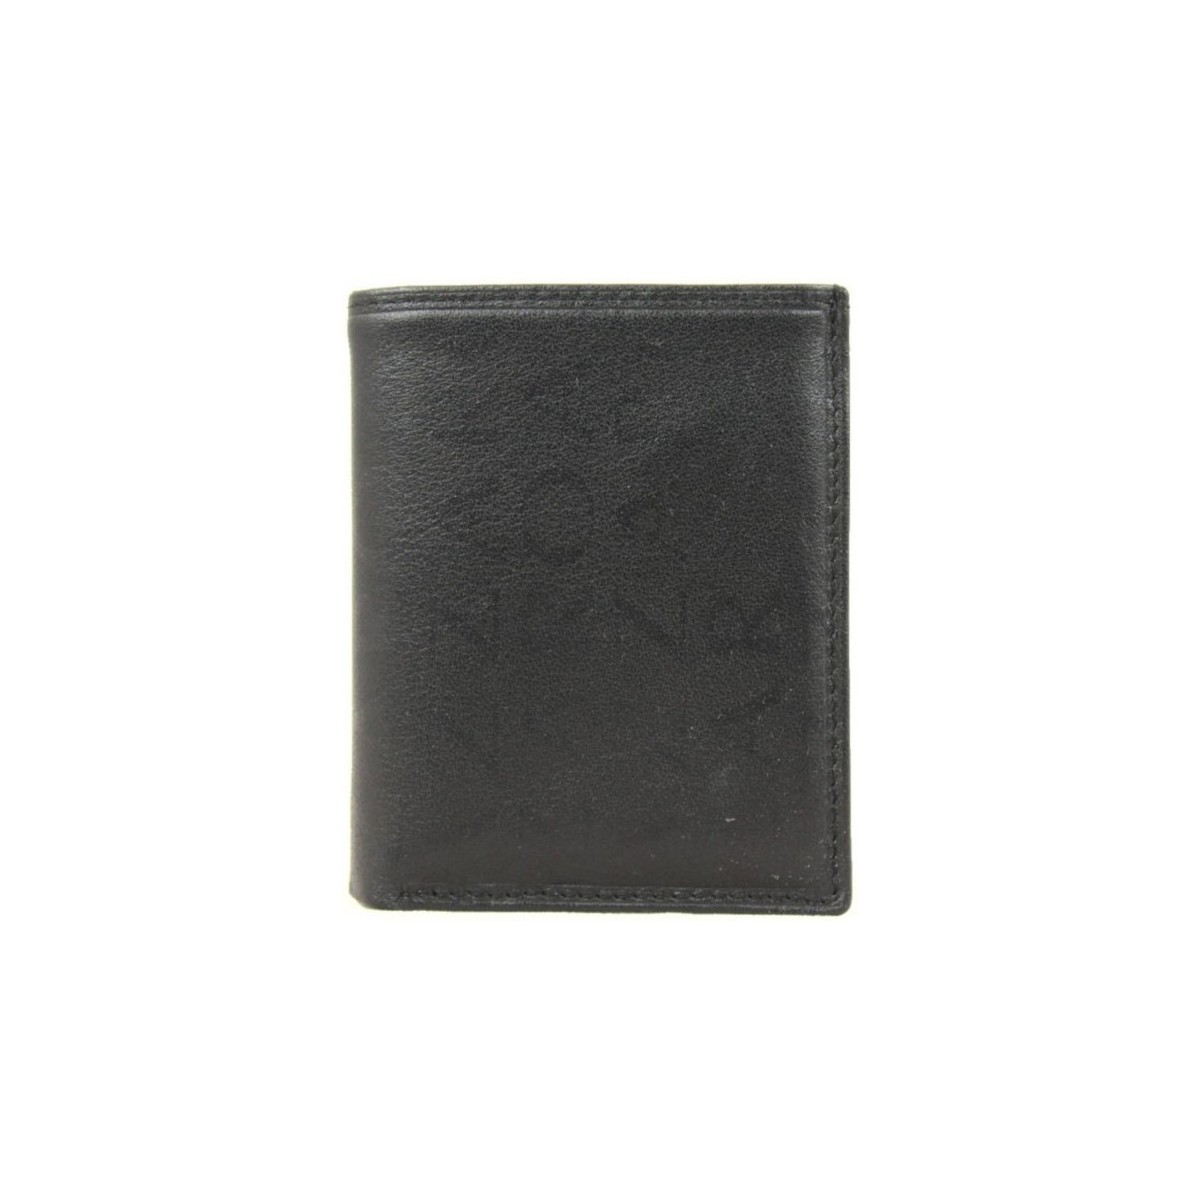 Azzaro Multicolore Porte monnaie - Cuir imprimé extra-plat - Noir e8Im4W1m